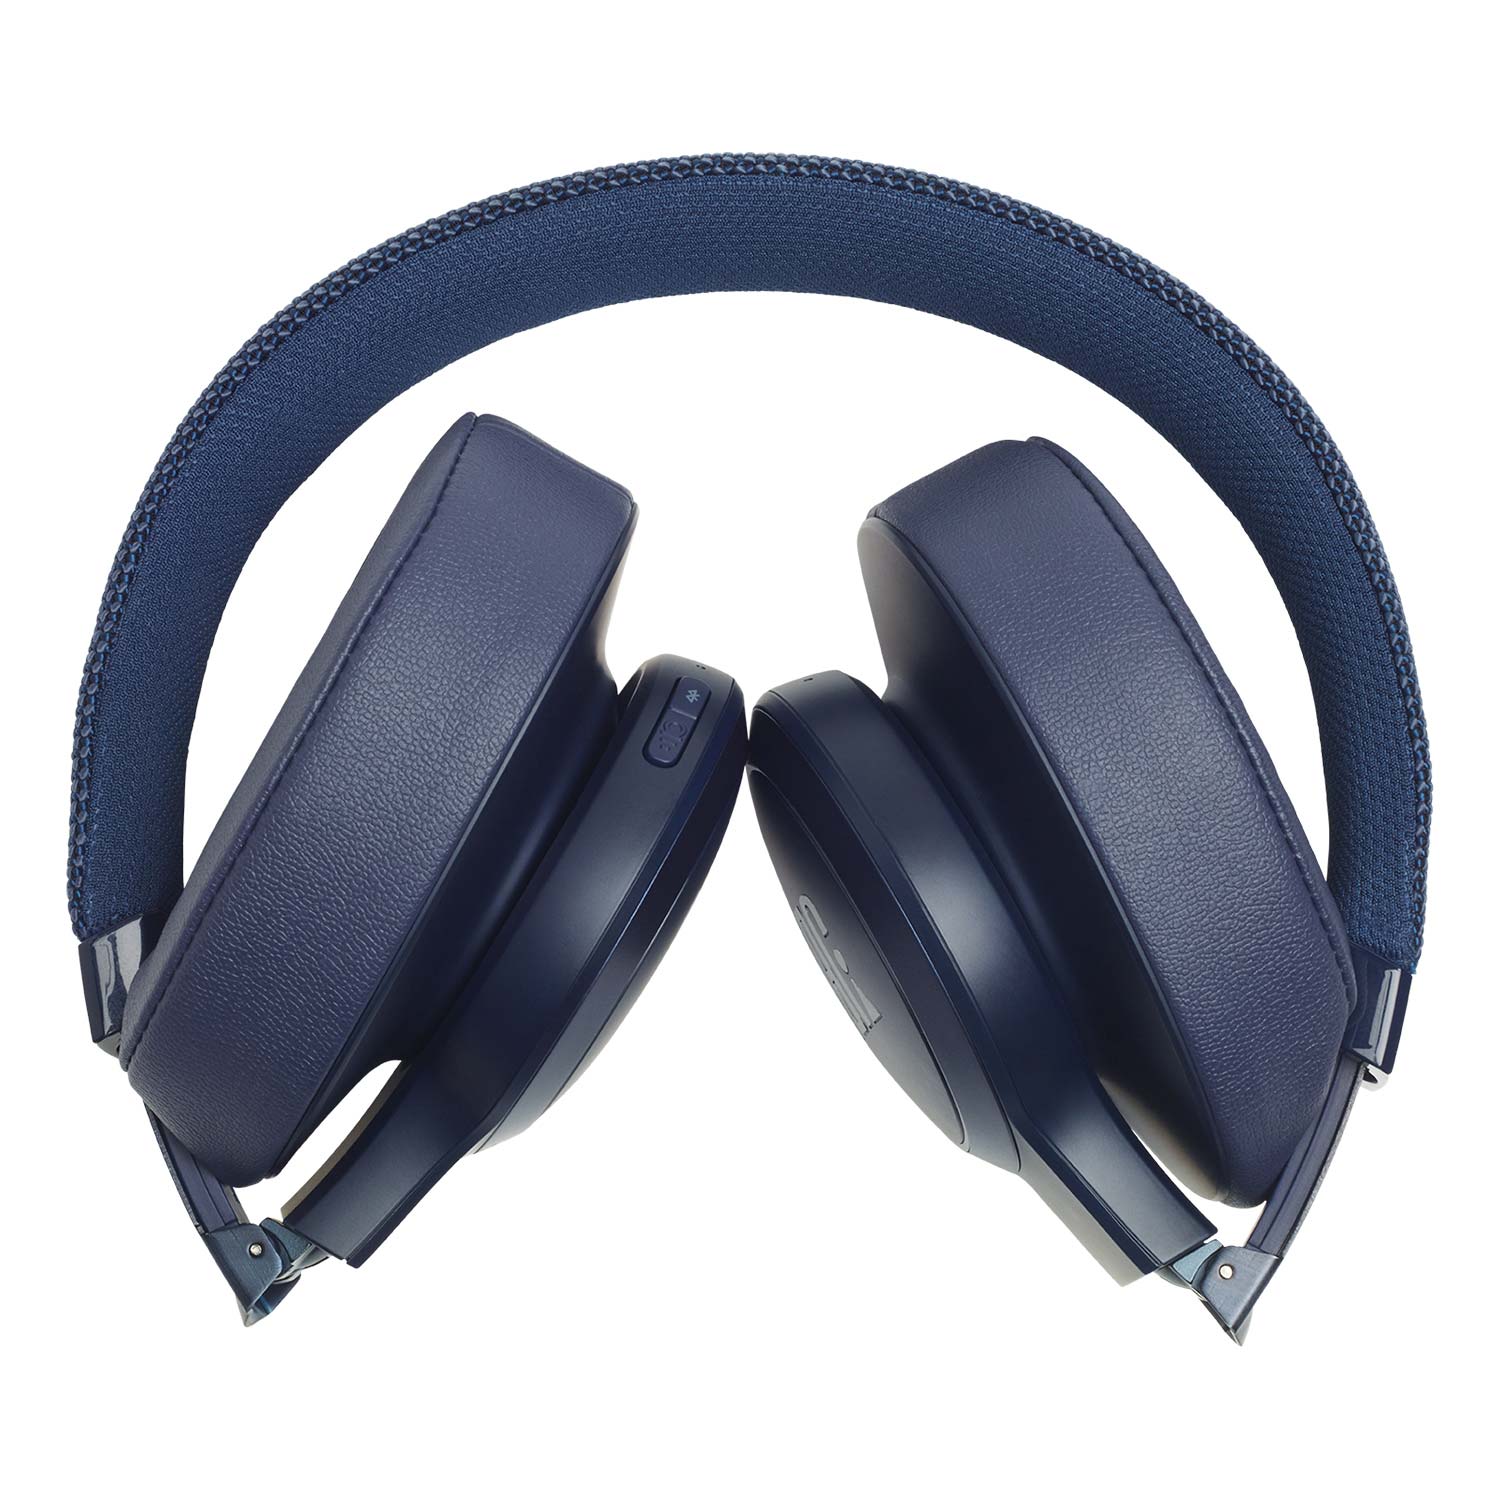 JBL LIVE 500BT Bluetooth Kopfhörer - Blau